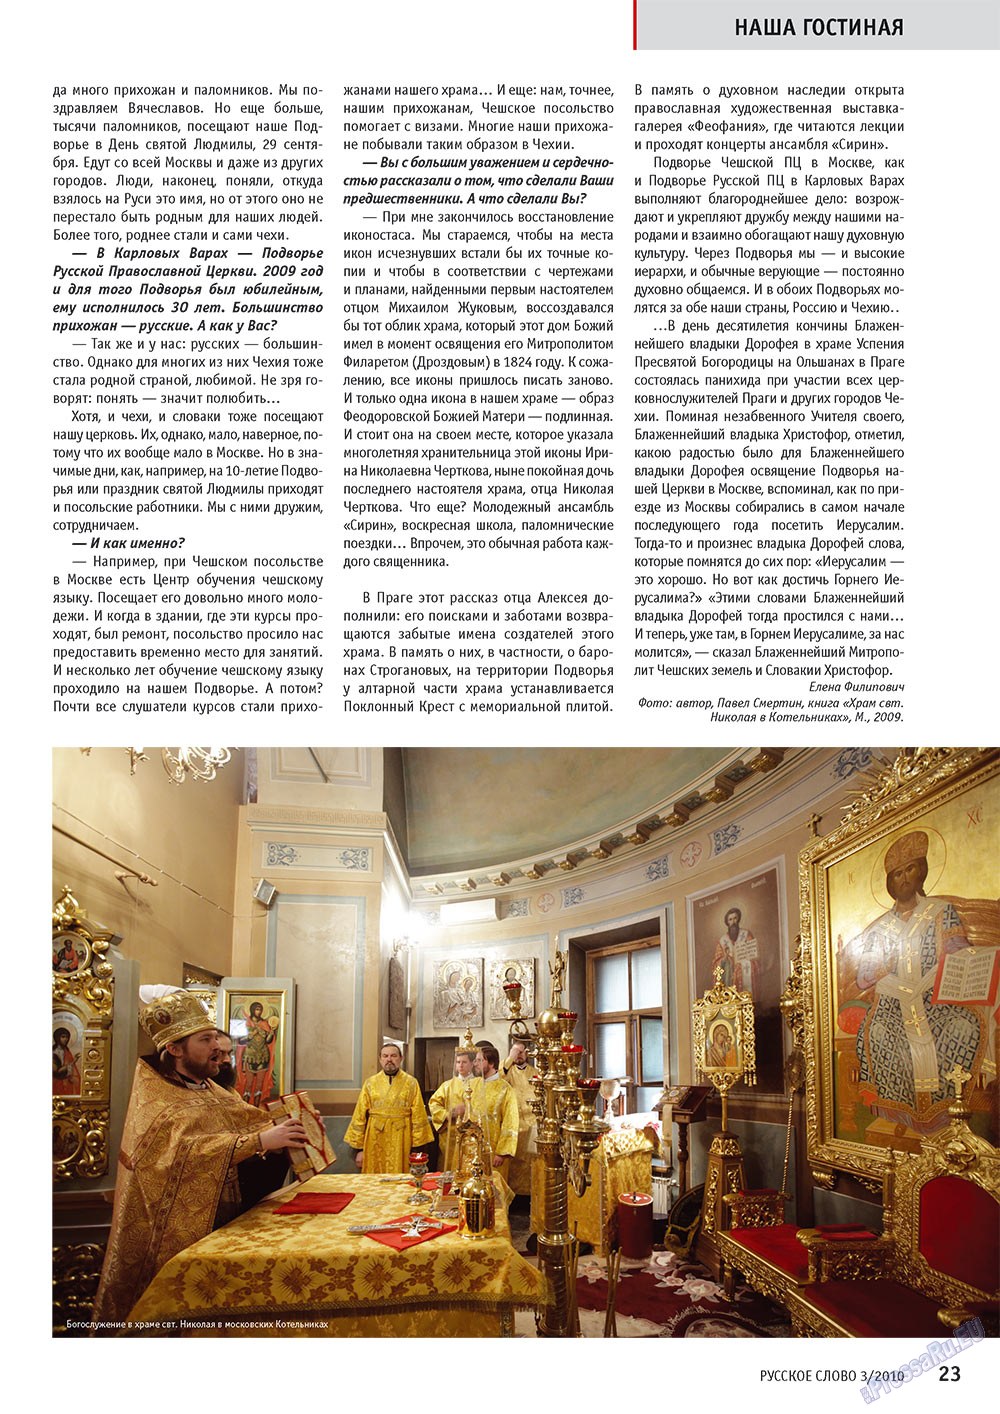 Русское слово, журнал. 2010 №3 стр.25